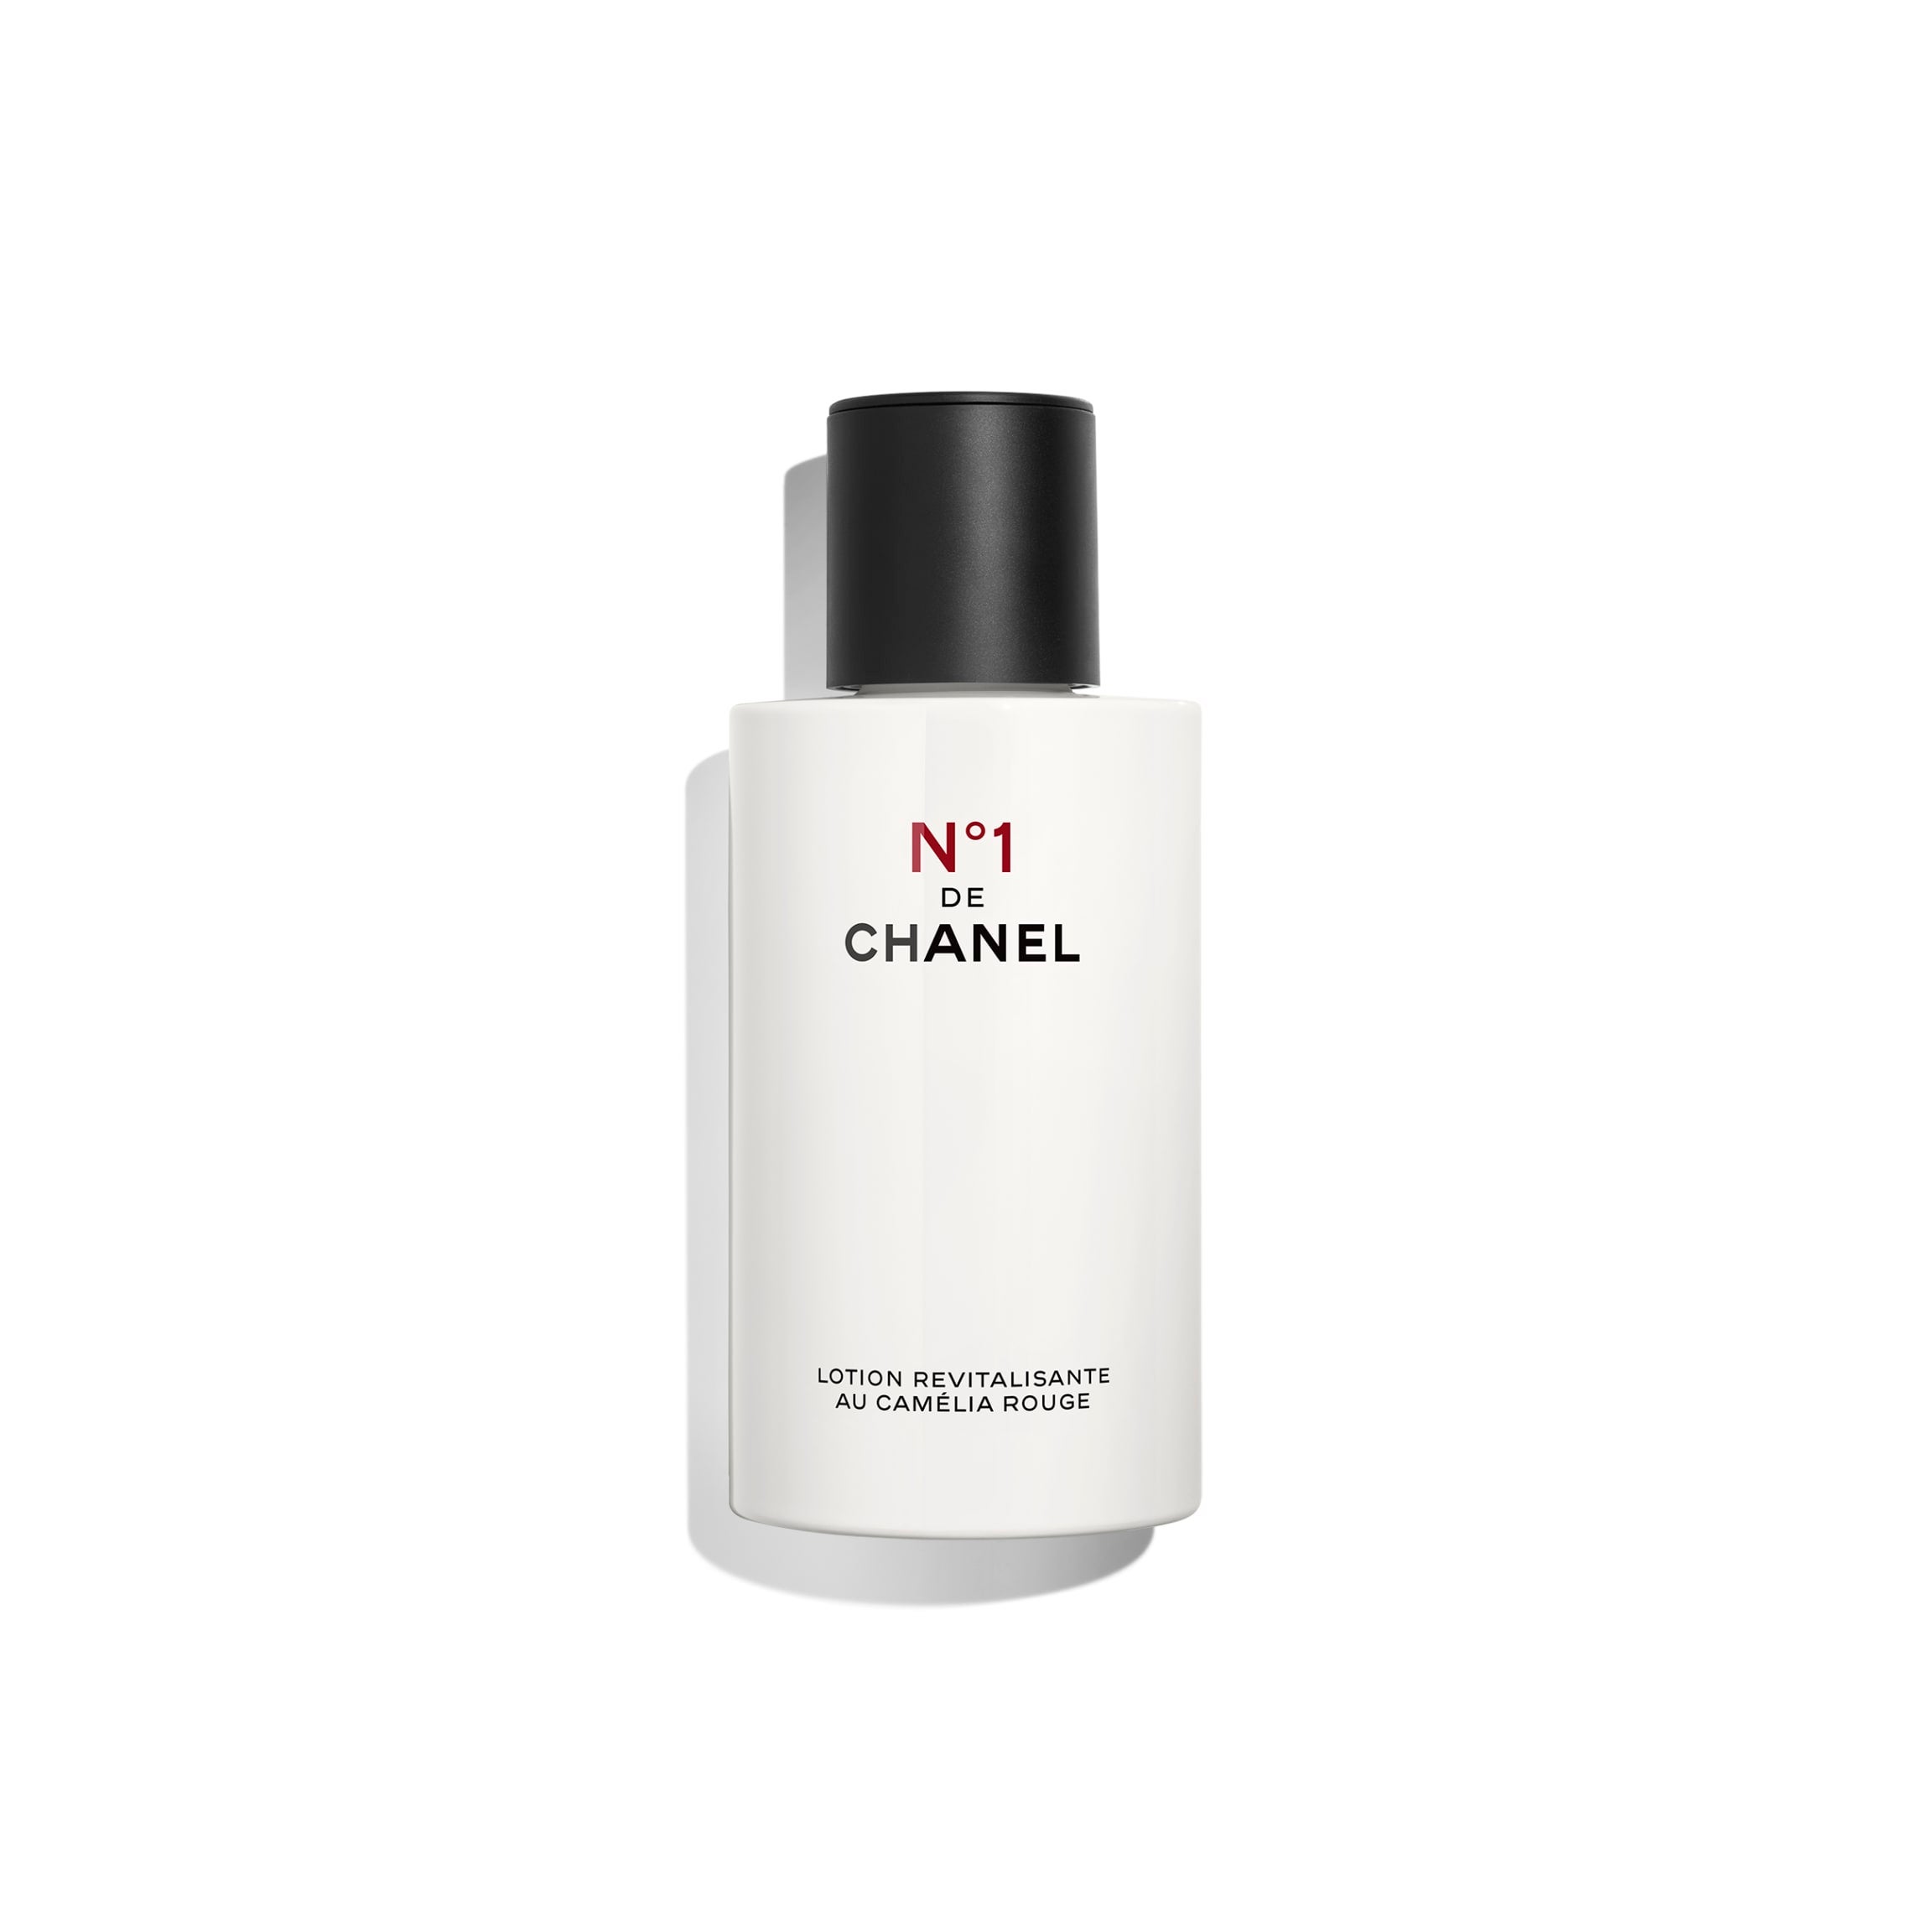 BLEU DE CHANEL Eau de Toilette Spray (EDT) - 3.4 FL. OZ.